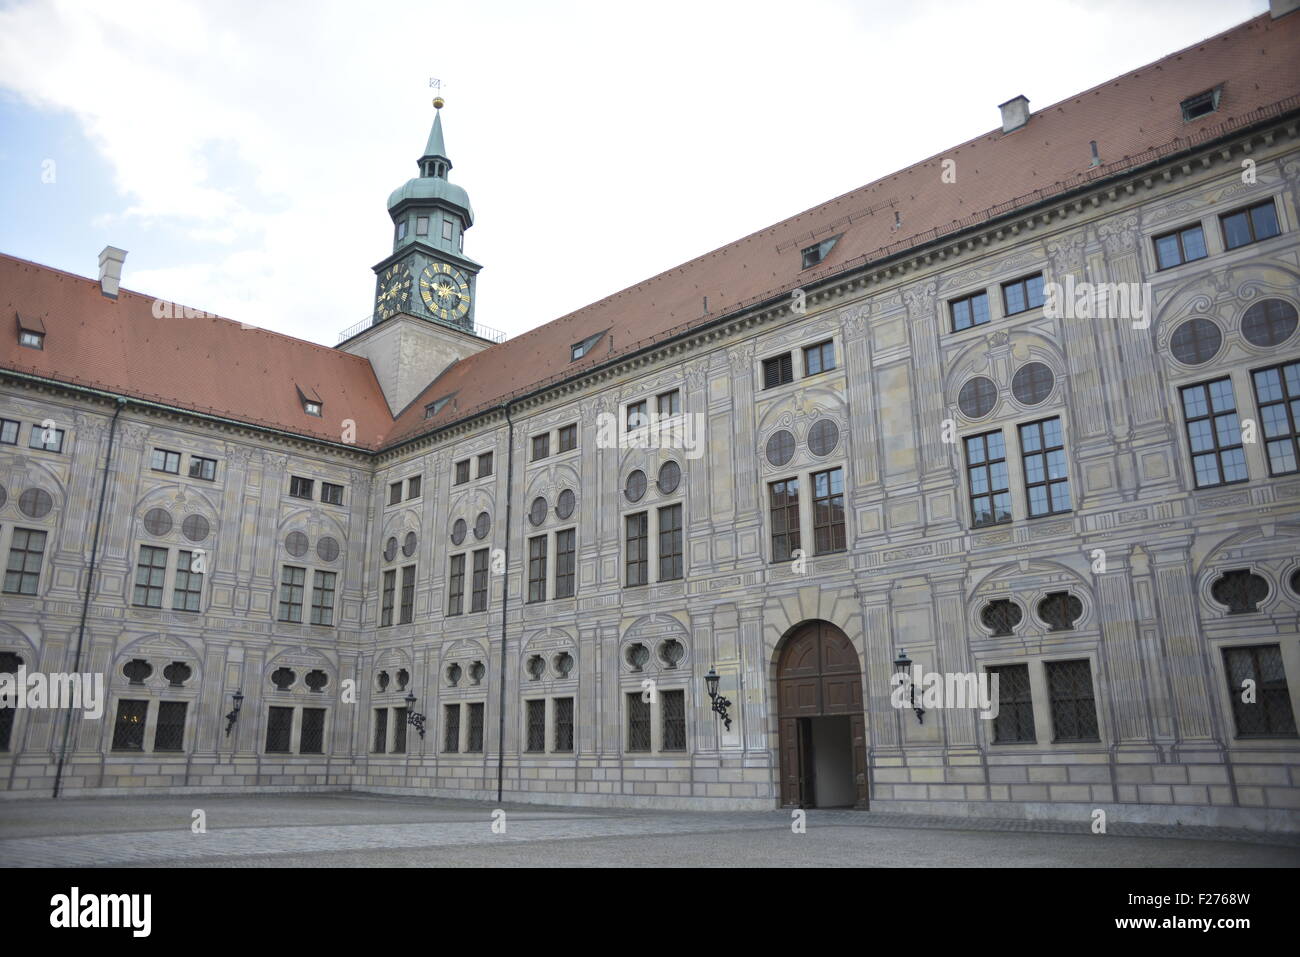 In Germania, in Baviera, Monaco di Baviera, Residenz, la vecchia residenza dei duchi della Baviera, la Galleria ancestrale Foto Stock